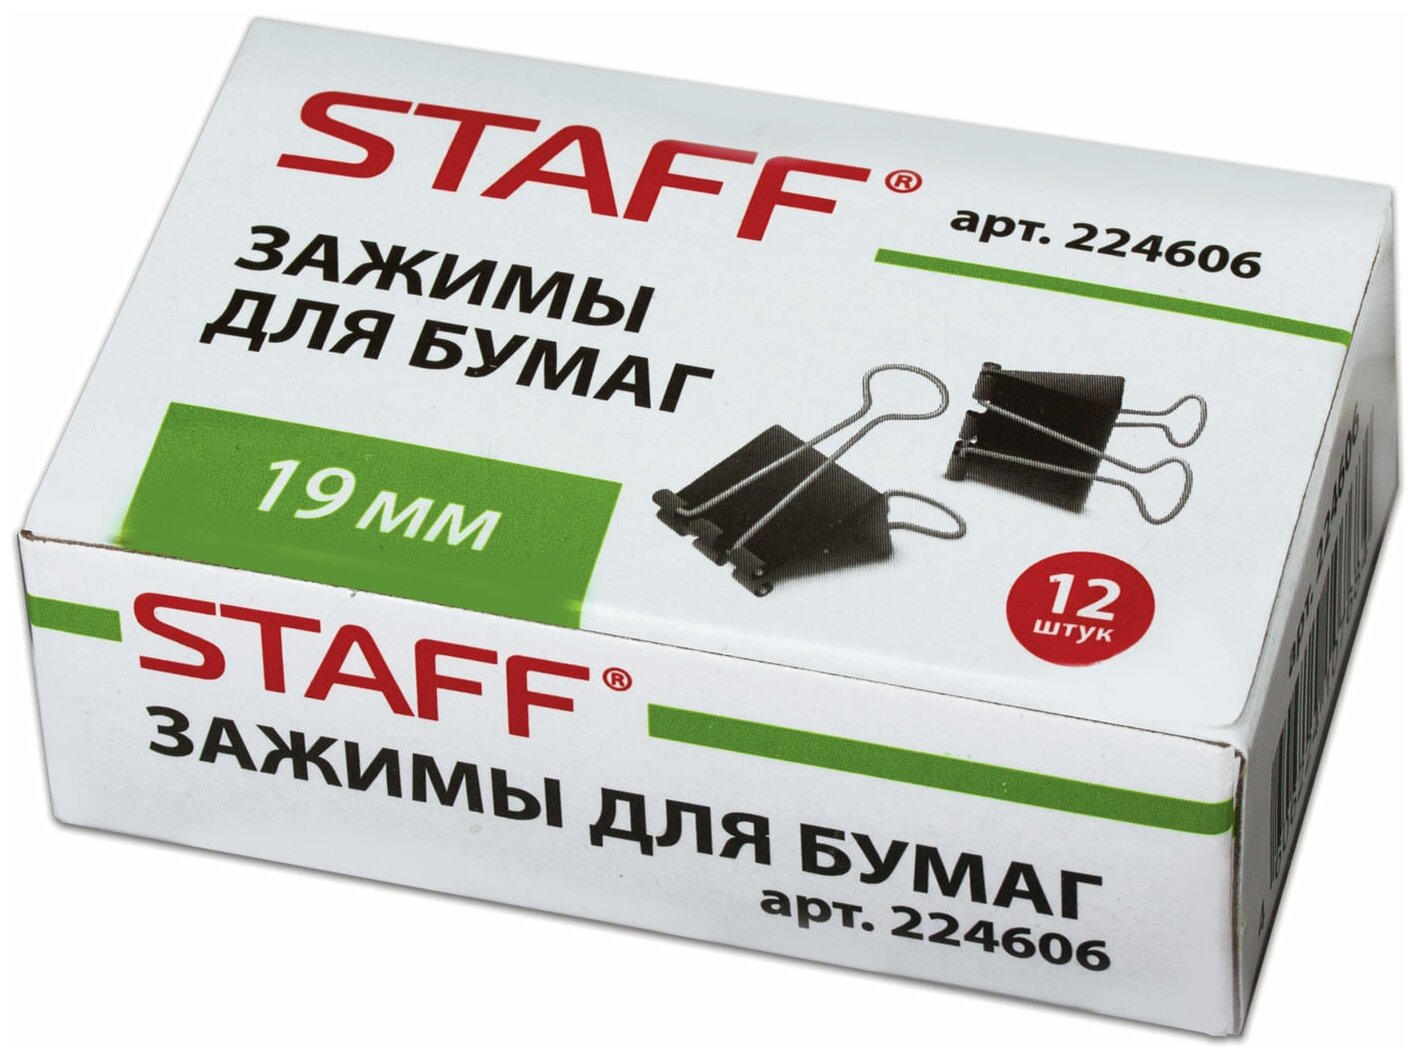 Зажимы для бумаг Staff 12 шт, 19 мм, на 60 листов, черные (224606)